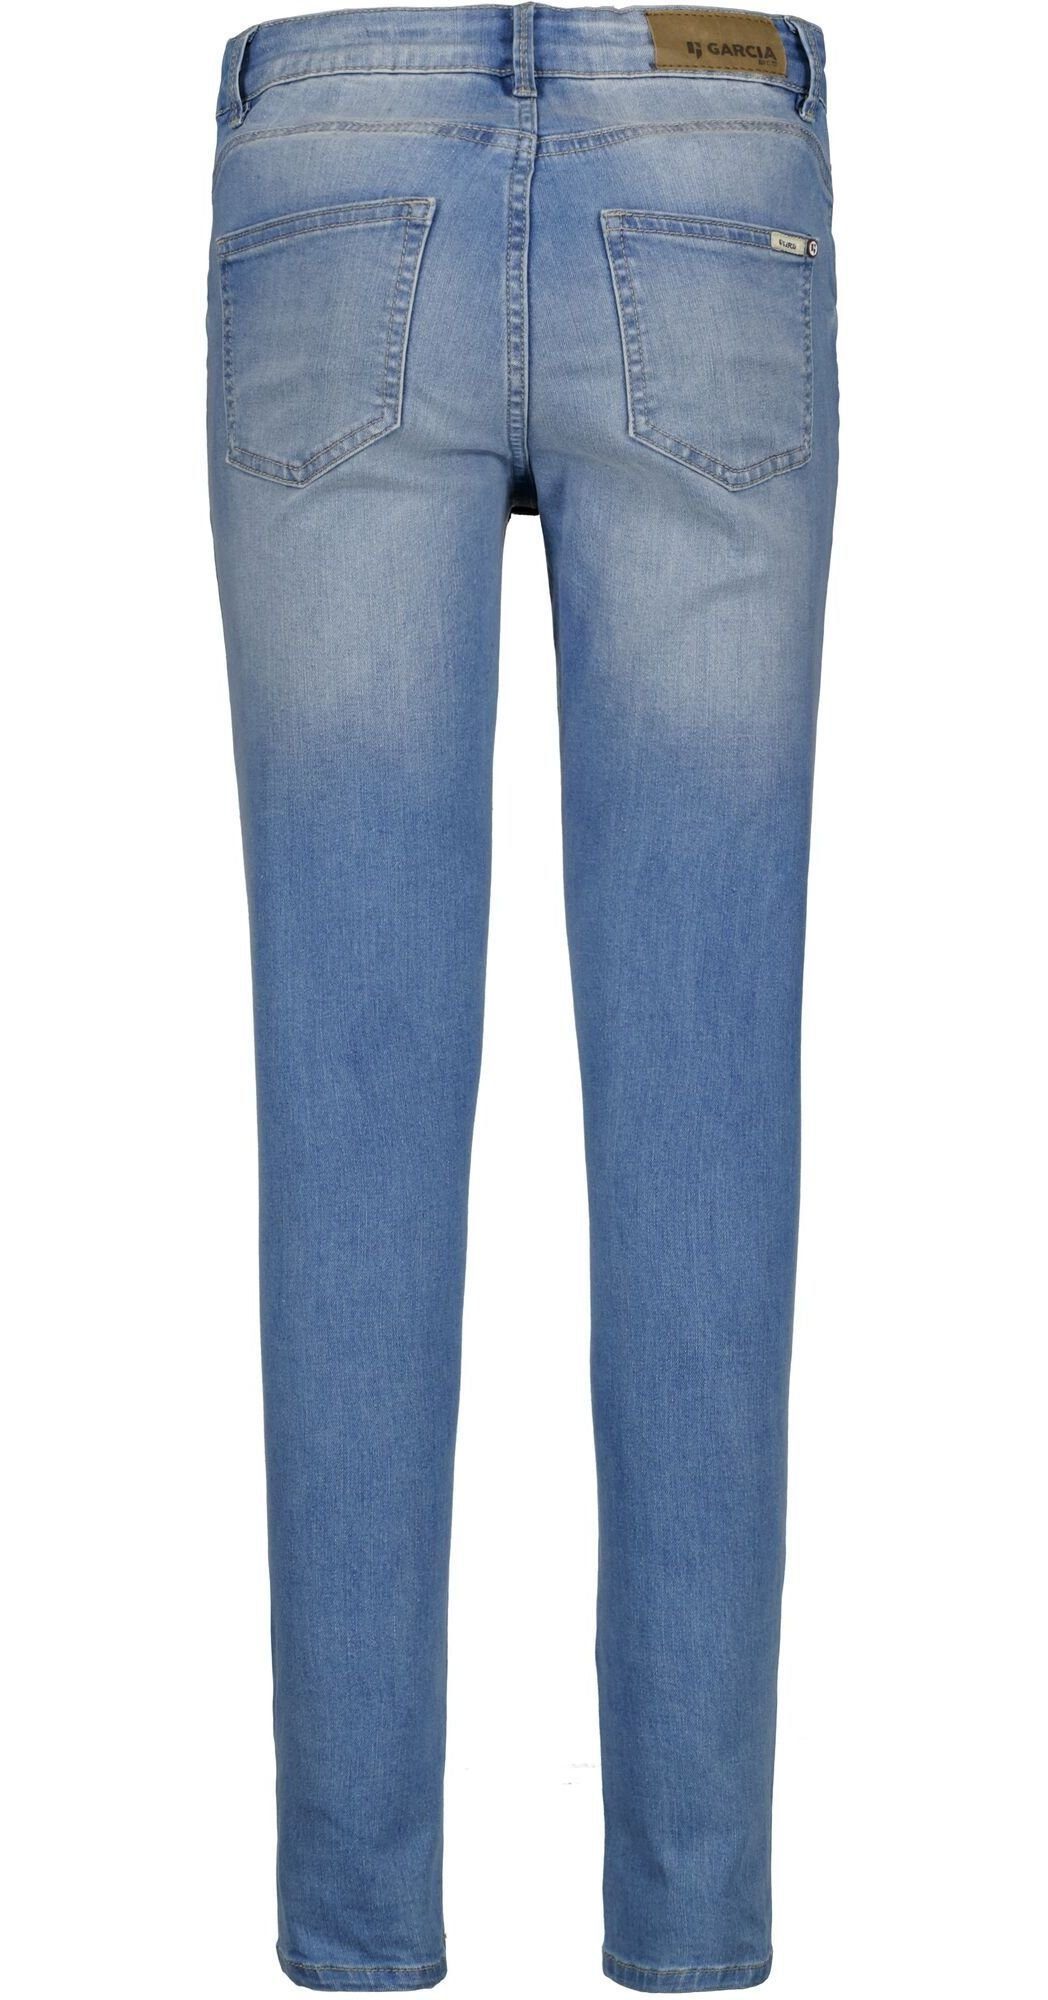 Sienna Jeans Slim-fit-Jeans Cropped Garcia superslim